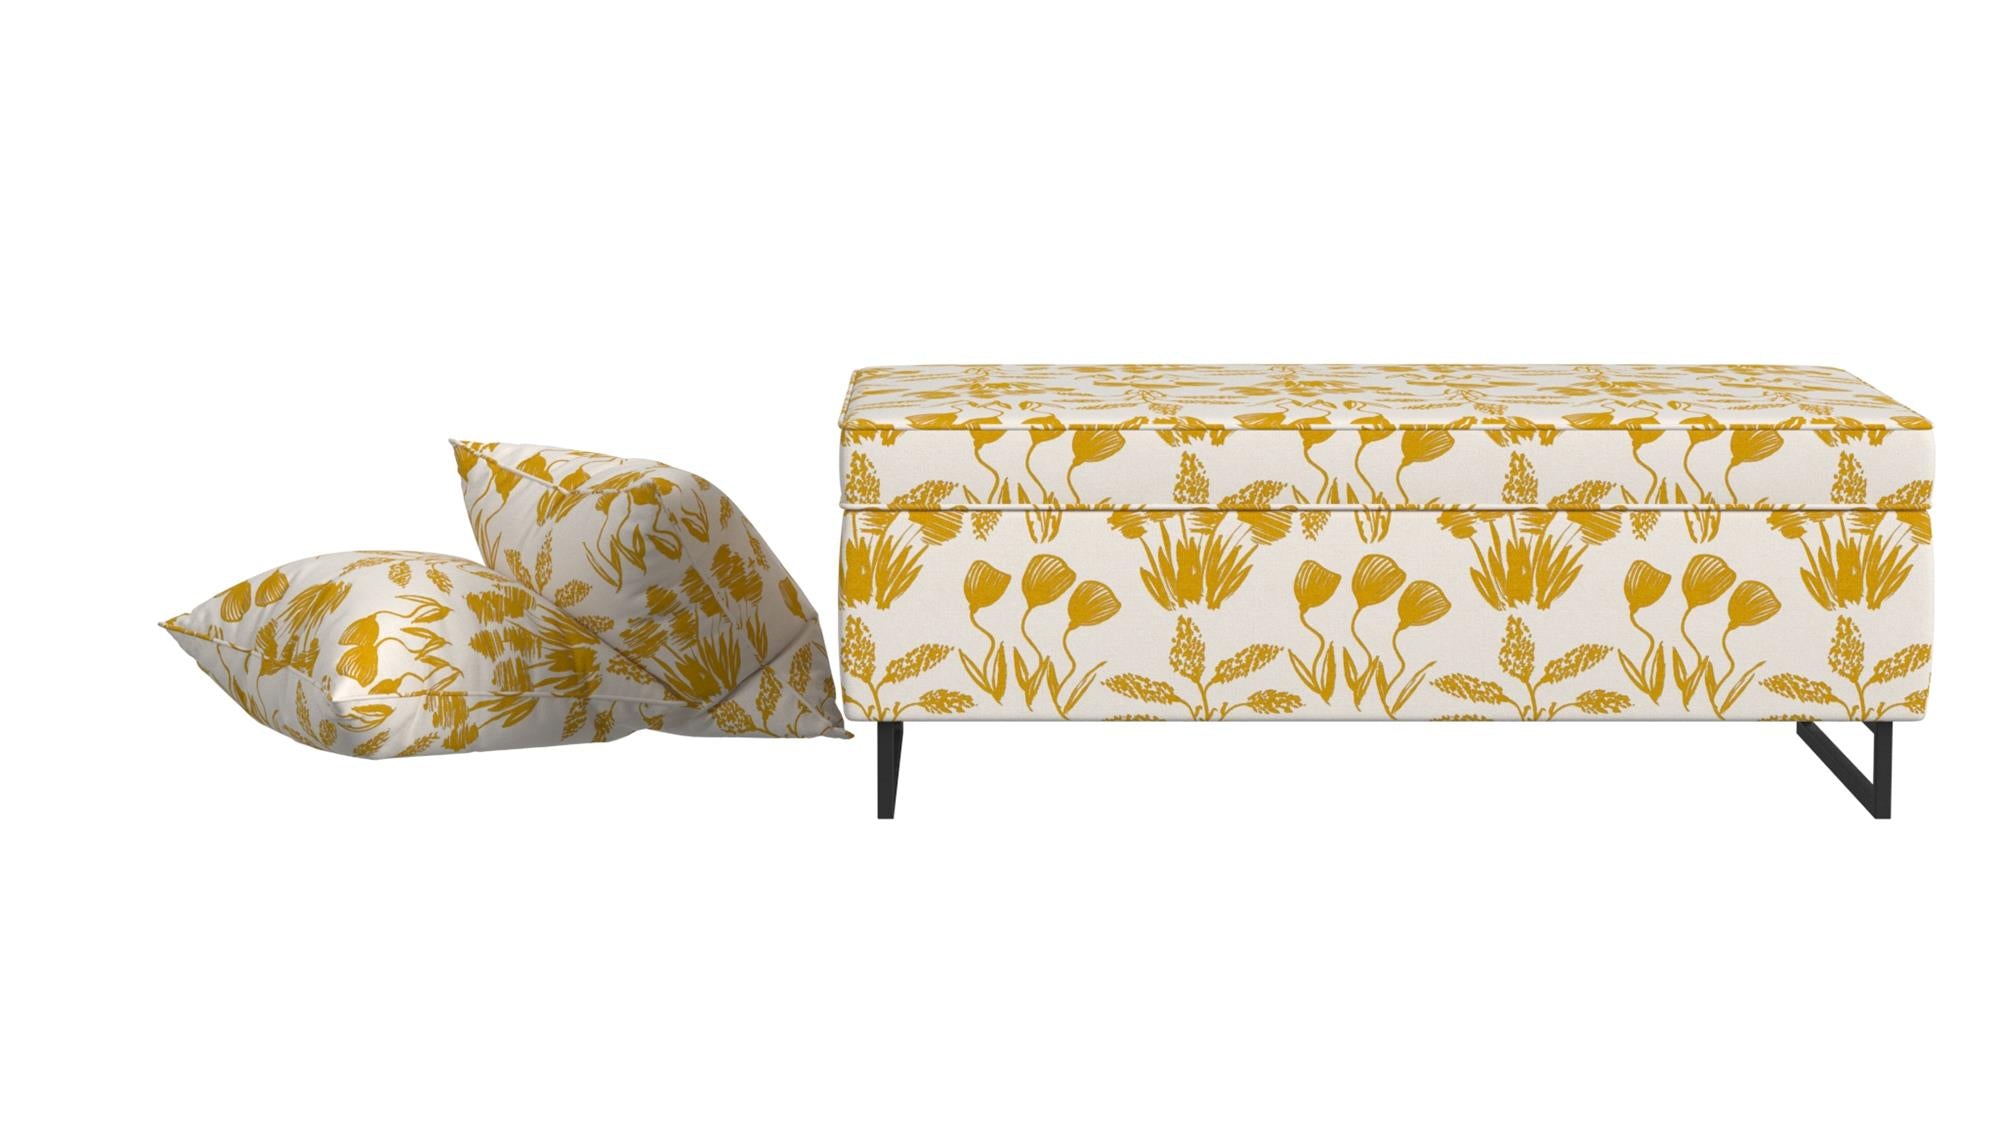  Bleeker Rectangular Storage Ottoman and 2 Pillows Set - Golden Hour Flower Garden - N/A